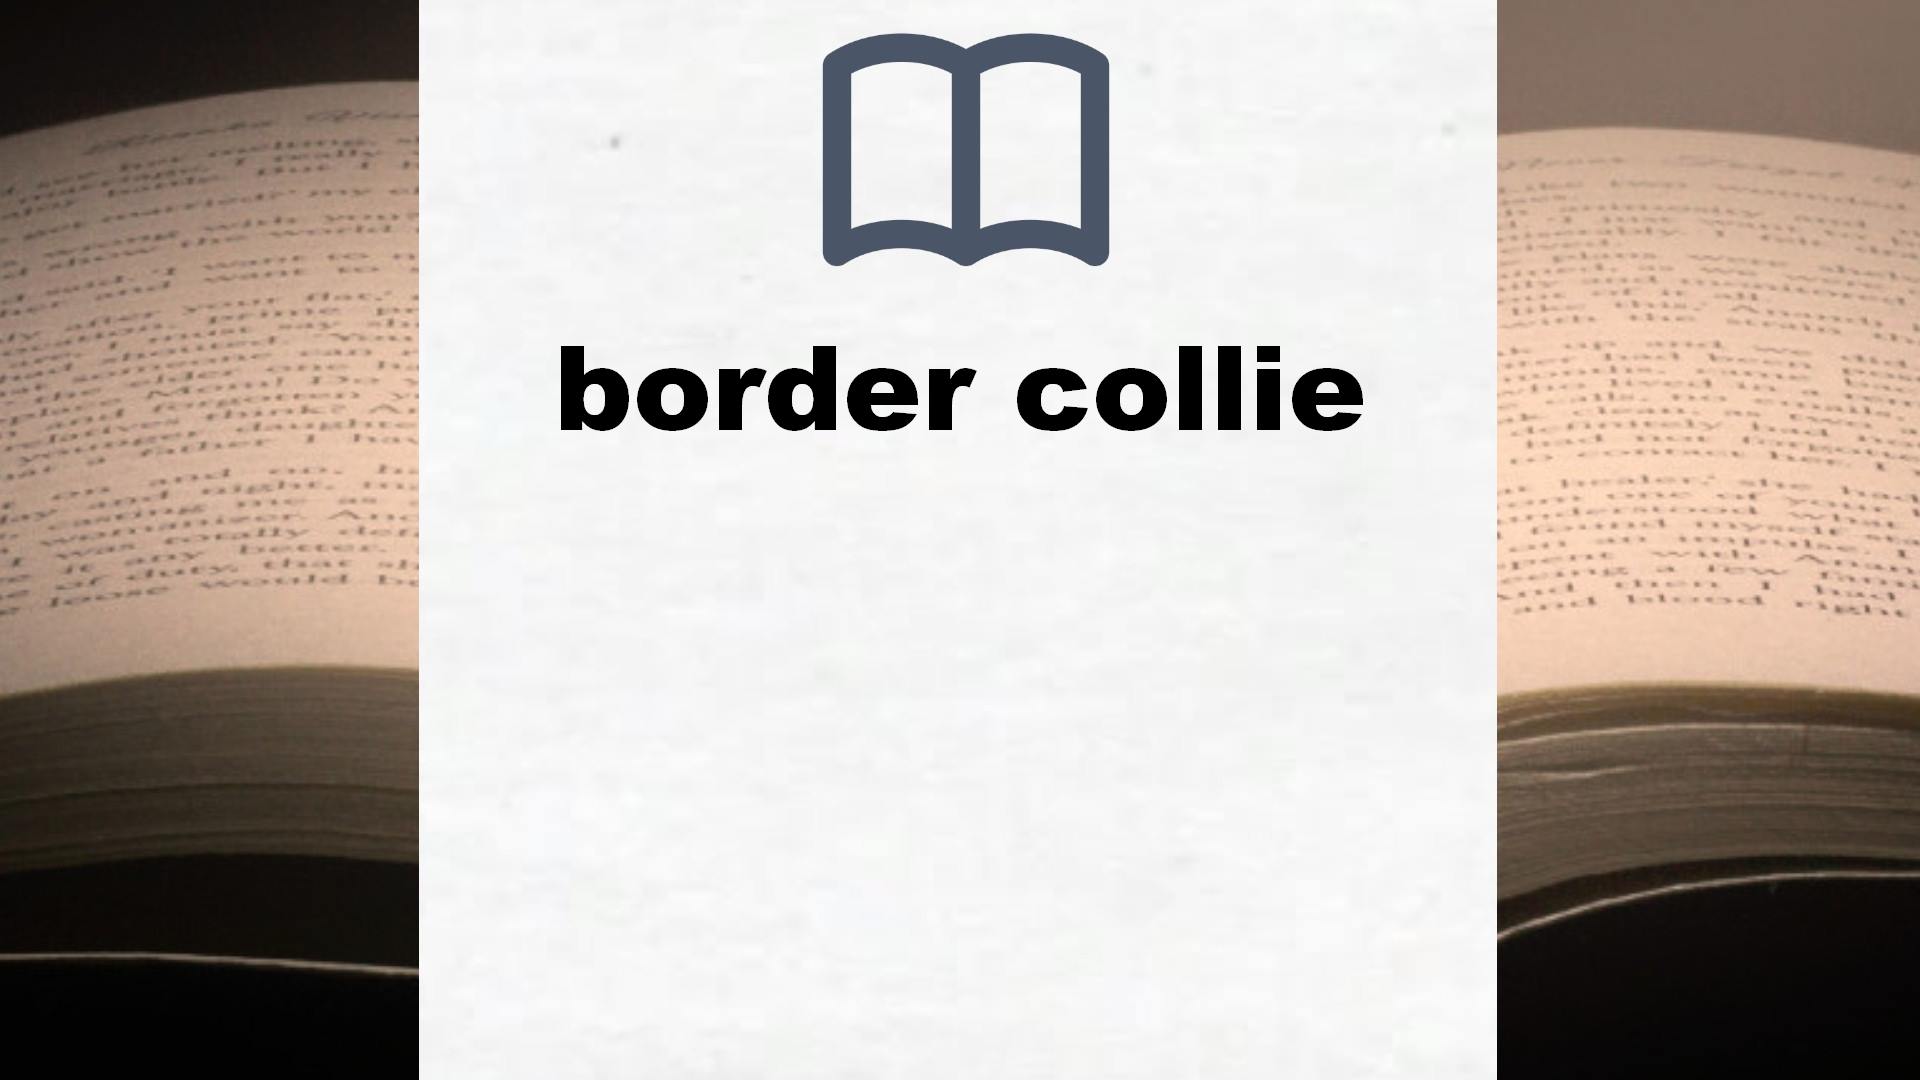 Libros sobre border collie